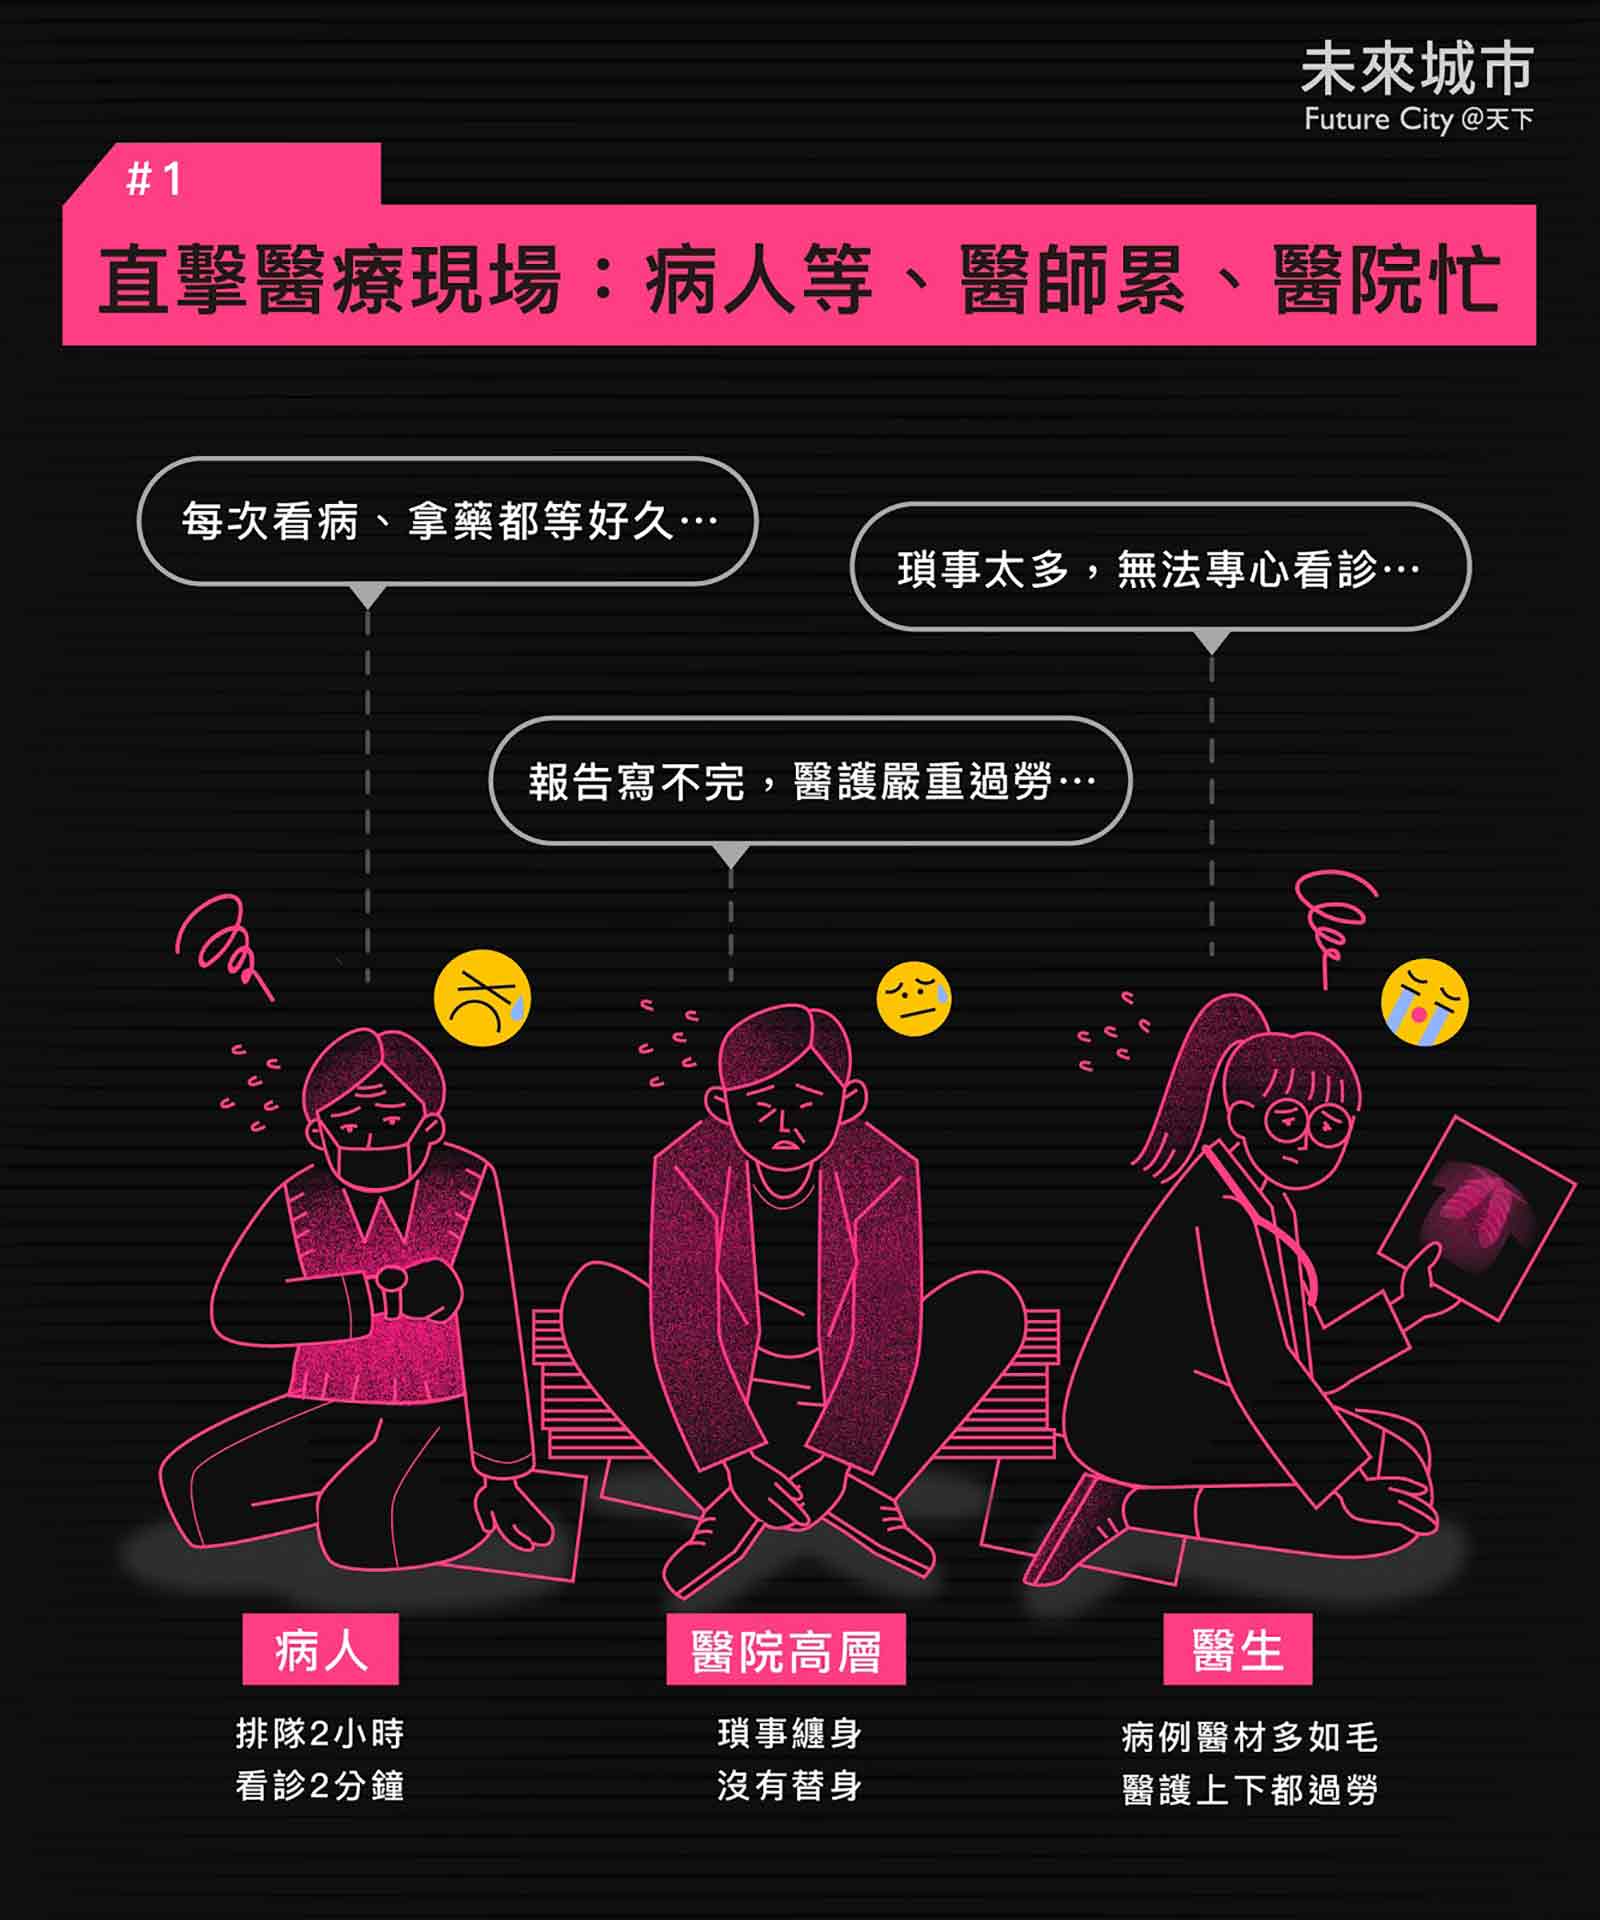 智慧醫療懶人包》八張圖，一次搞懂智慧醫療的定義、應用與台灣的挑戰- 未來城市＠天下- 進步城市的新想像